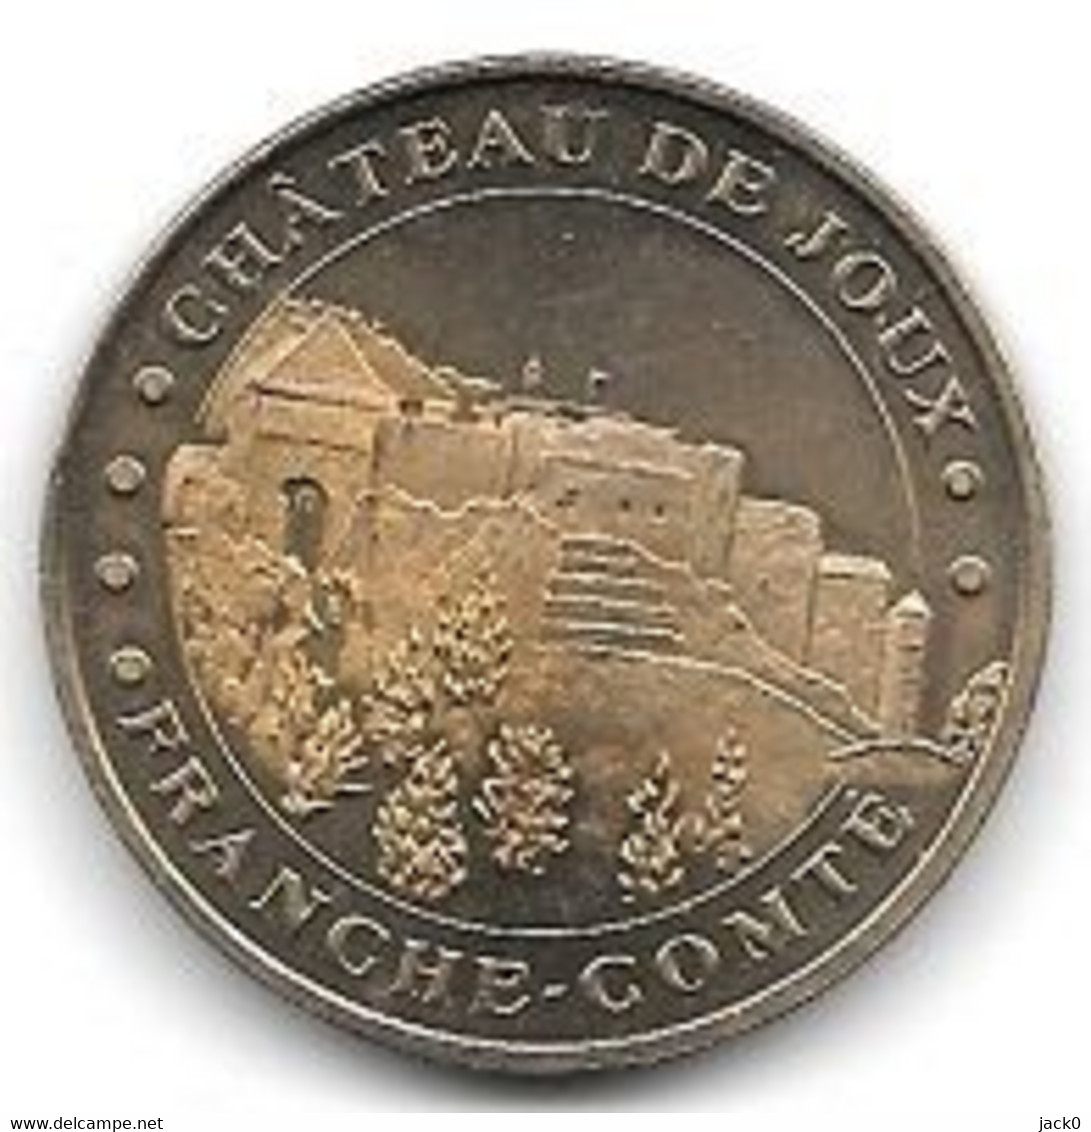 Médaille Touristique  2005, Ville  LA CLUSE ET MIJOUX, CHÂTEAU DE JOUX, FRANCHE - COMTE  ( 25 ) - 2005